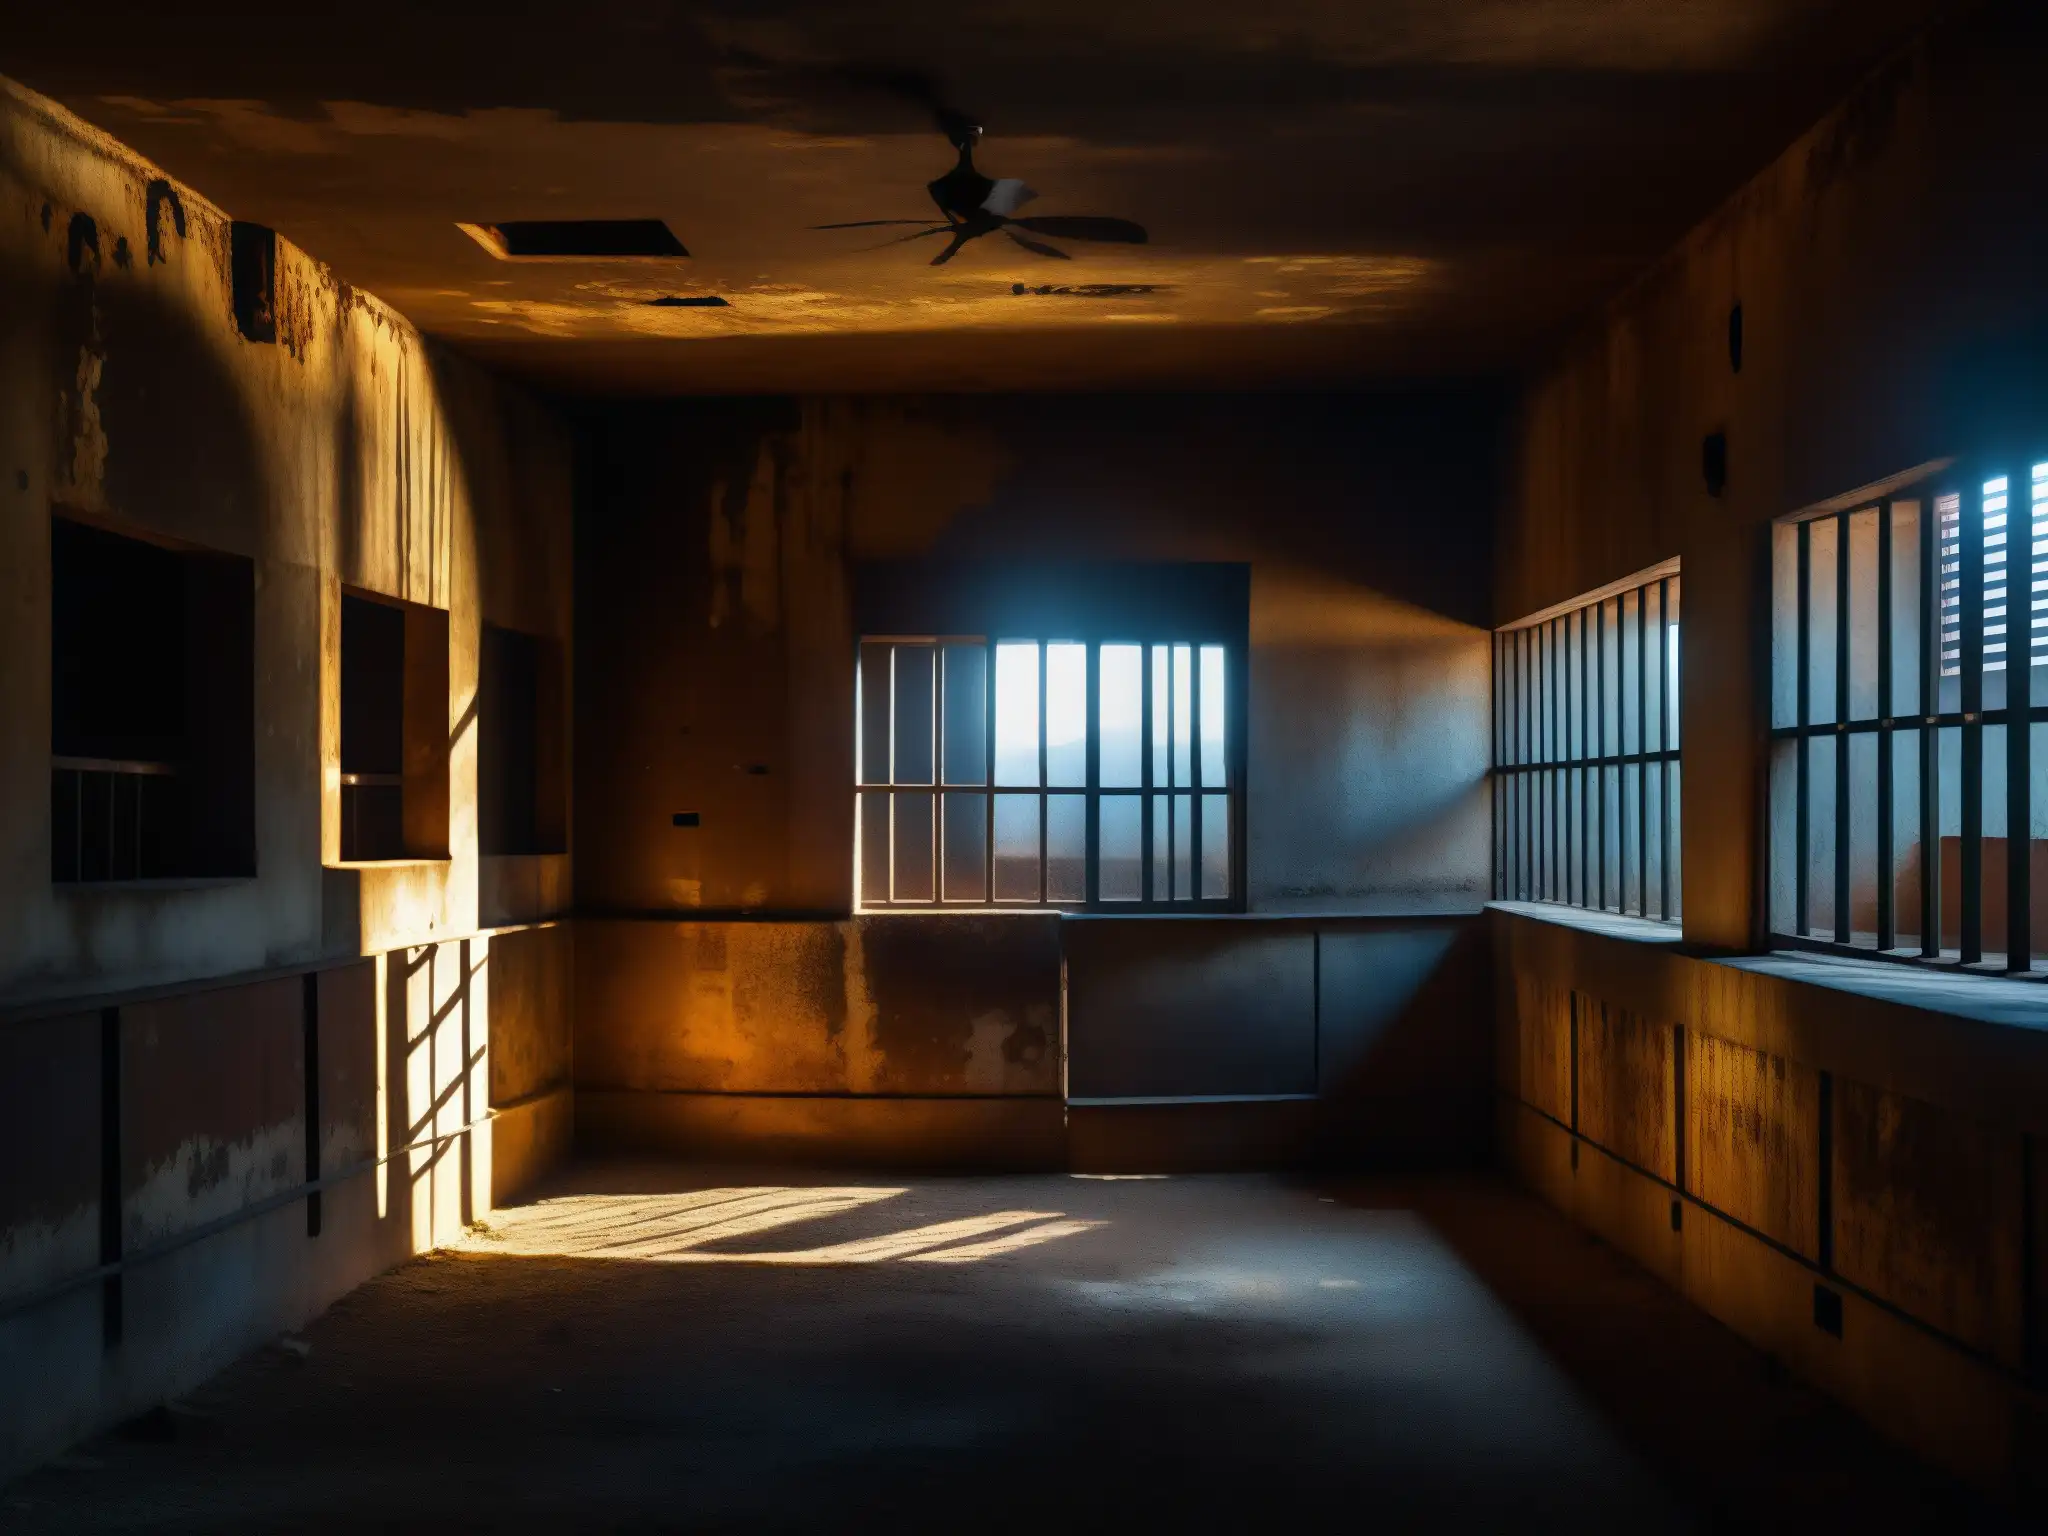 El oscuro interior del Palacio de Lecumberri revela la atmósfera fantasmagórica y la historia que yace entre sus paredes